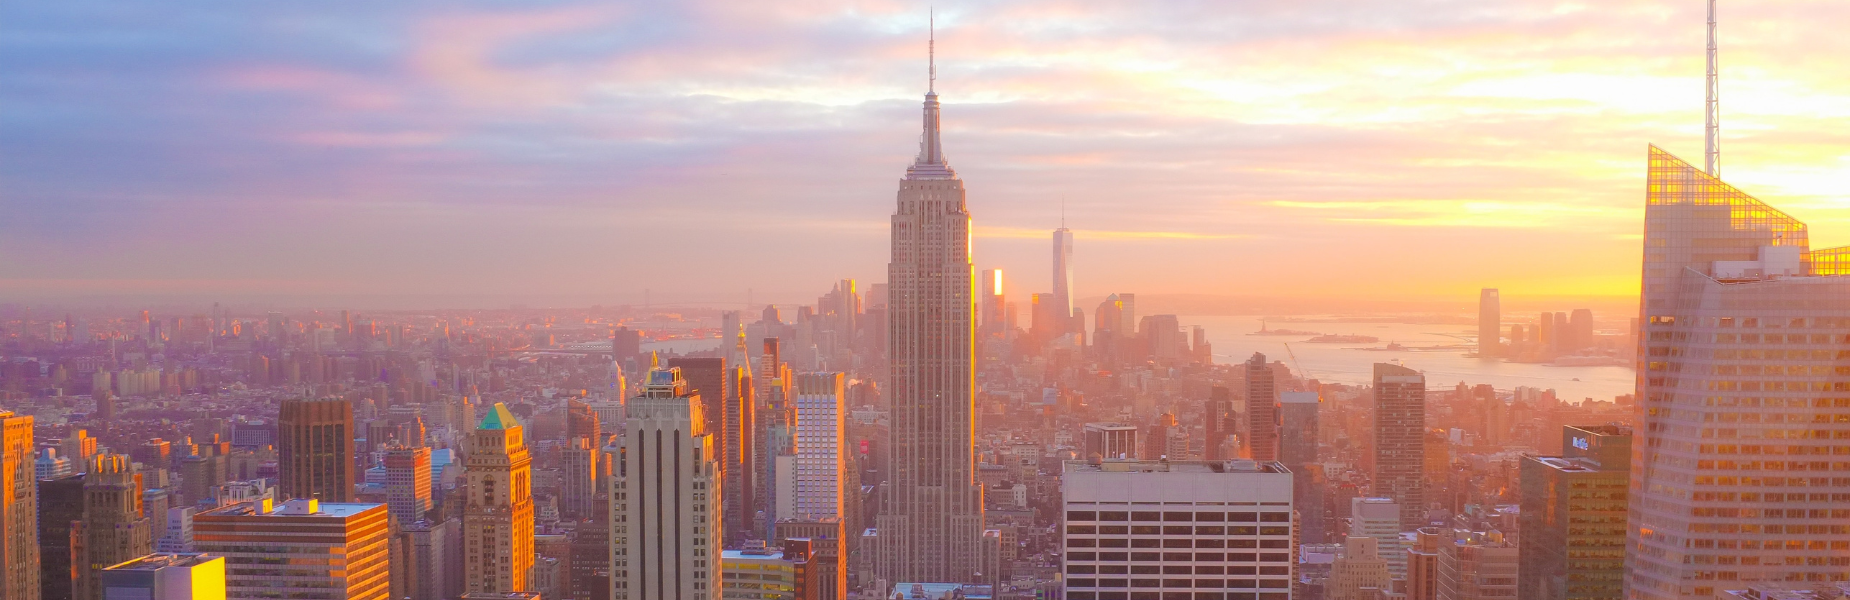 Skyline van New York met zonsondergang, roze/gele lucht